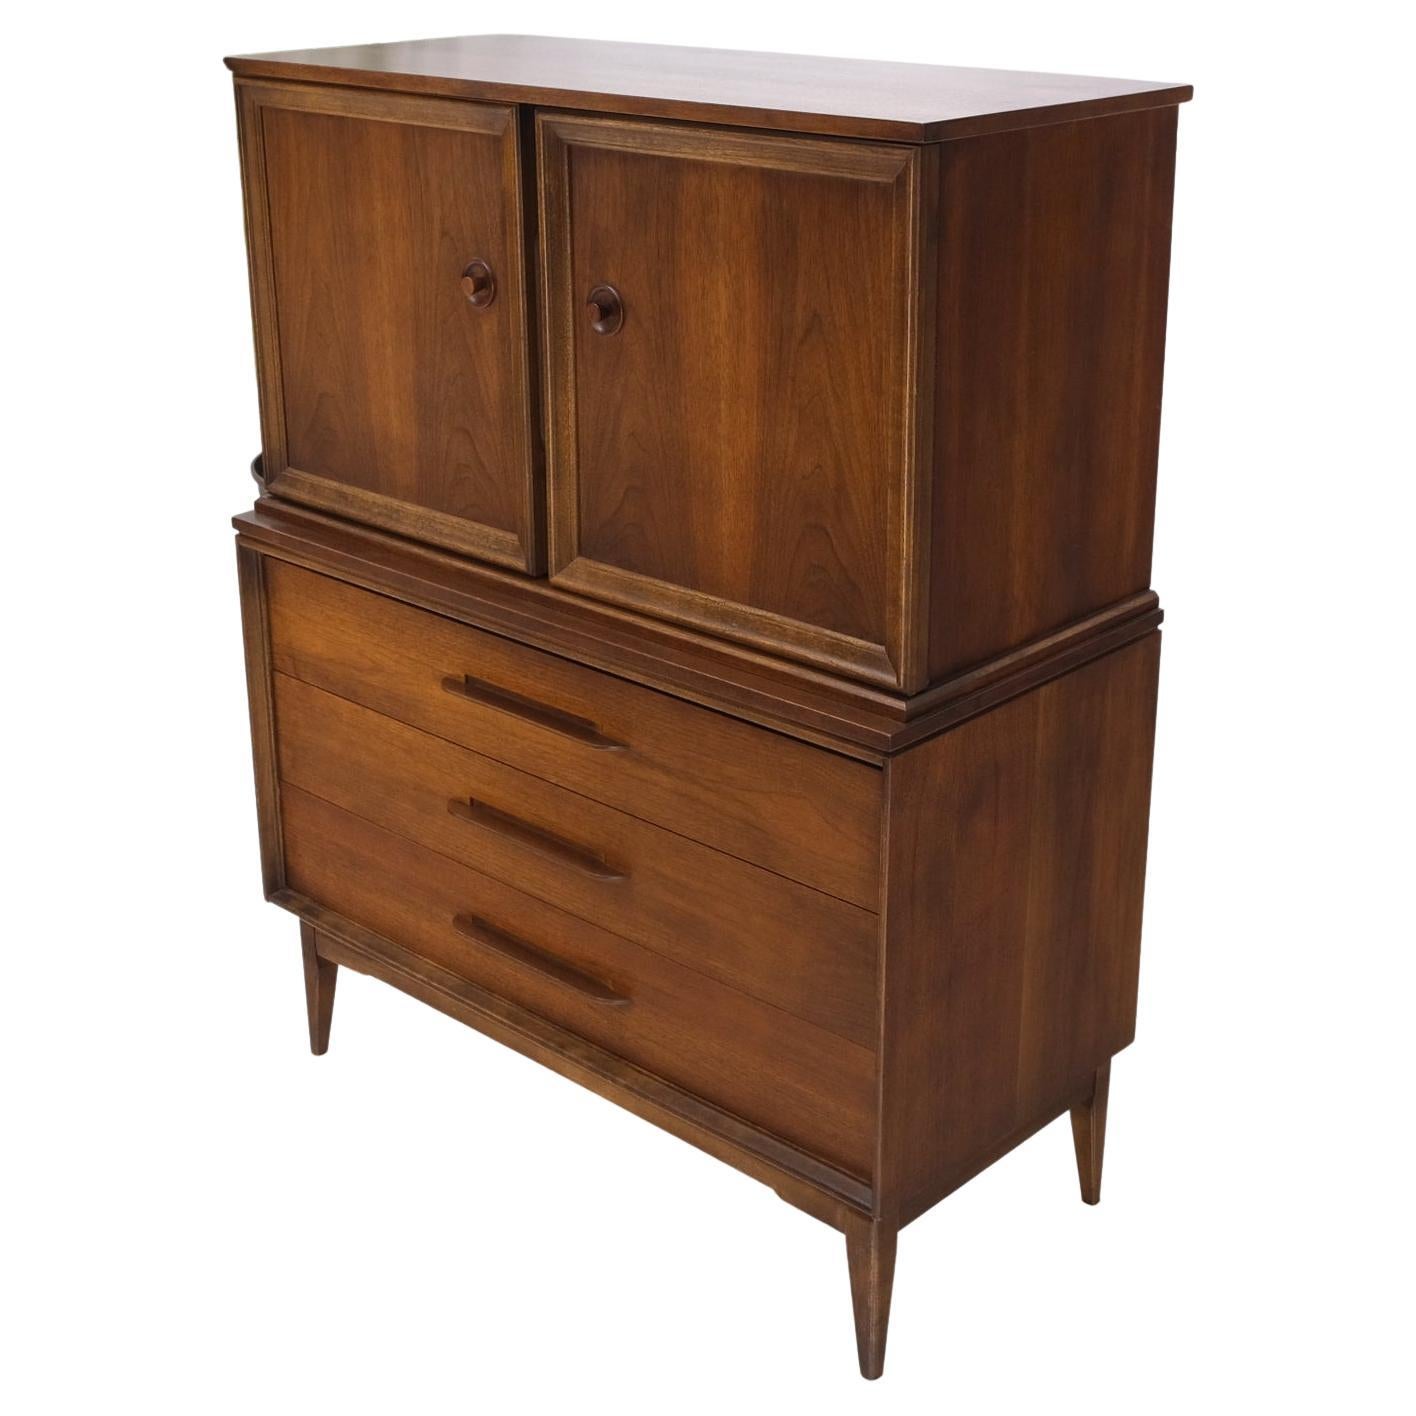 Light Medium Walnut Gentleman's High Chest Dresser Cabinet Mid-Century Modern For Sale